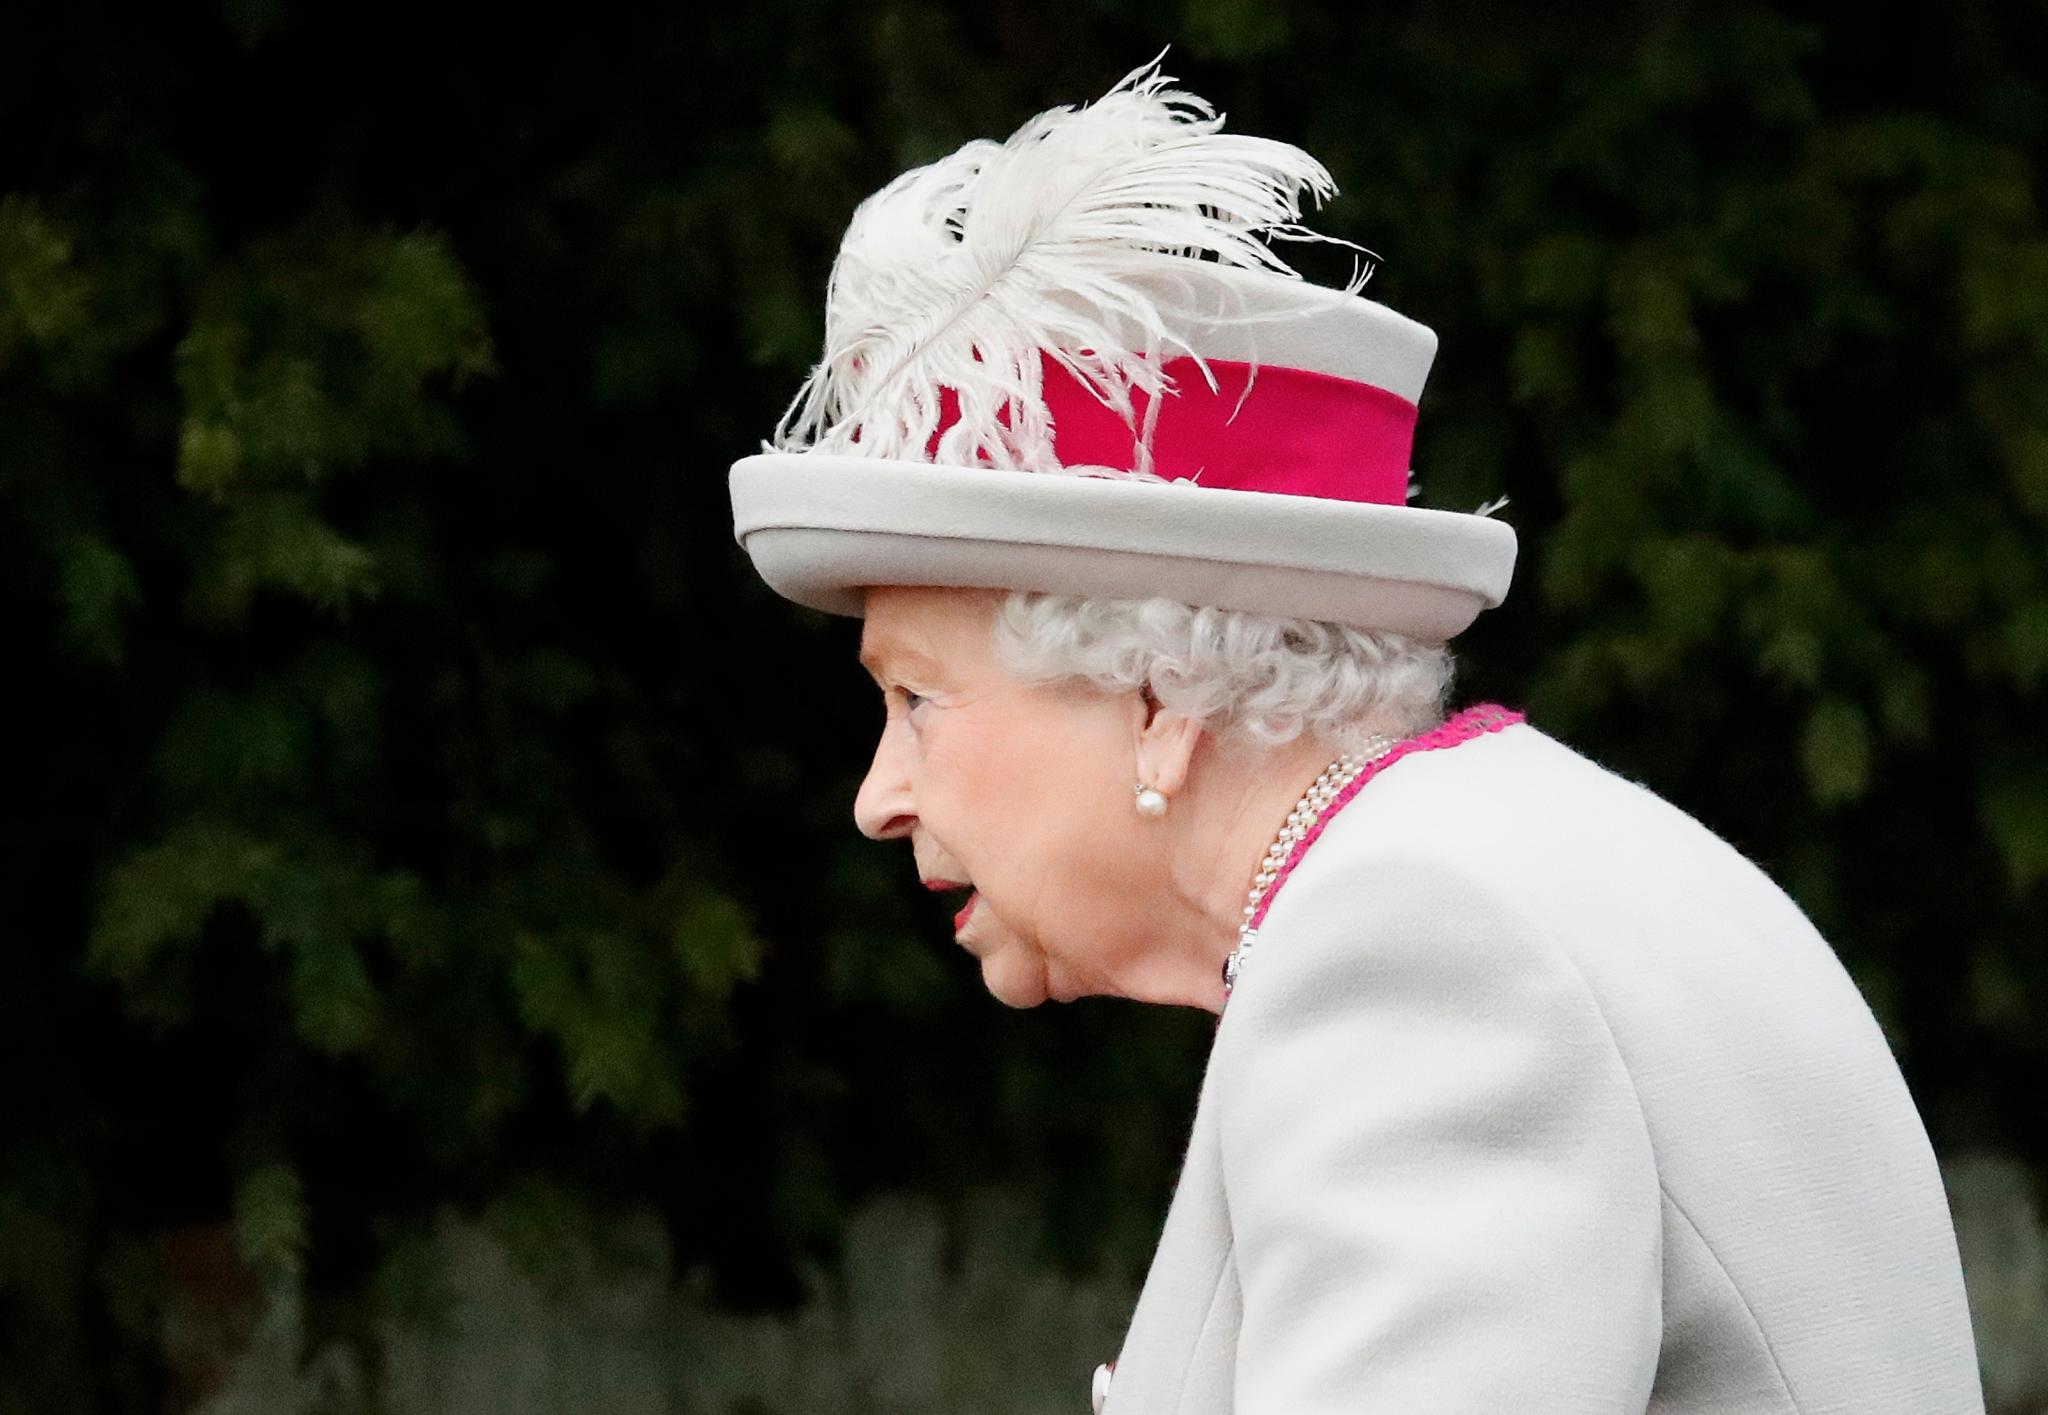 Dronning Elizabeth på vei til kirke 1. juledag.